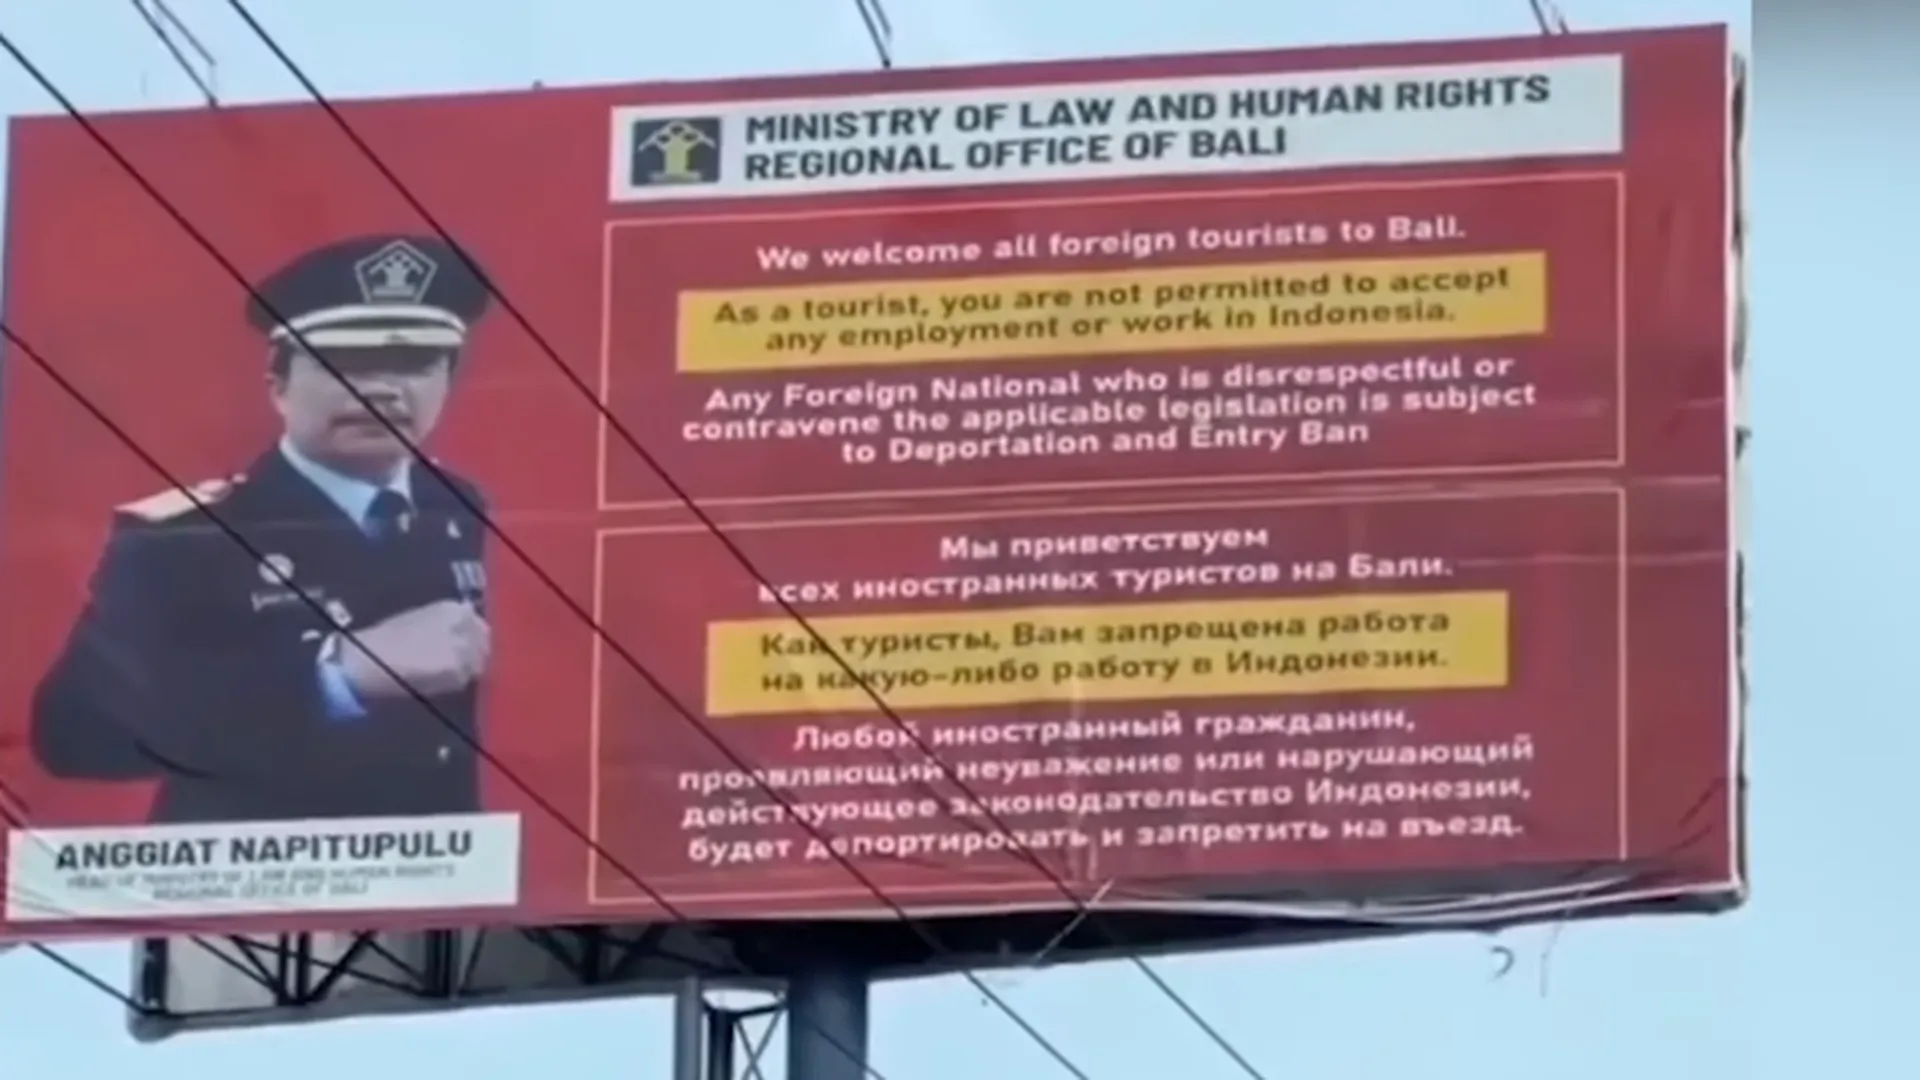 Депортация и запрет на въезд: на Бали появились плакаты с угрозами на русском